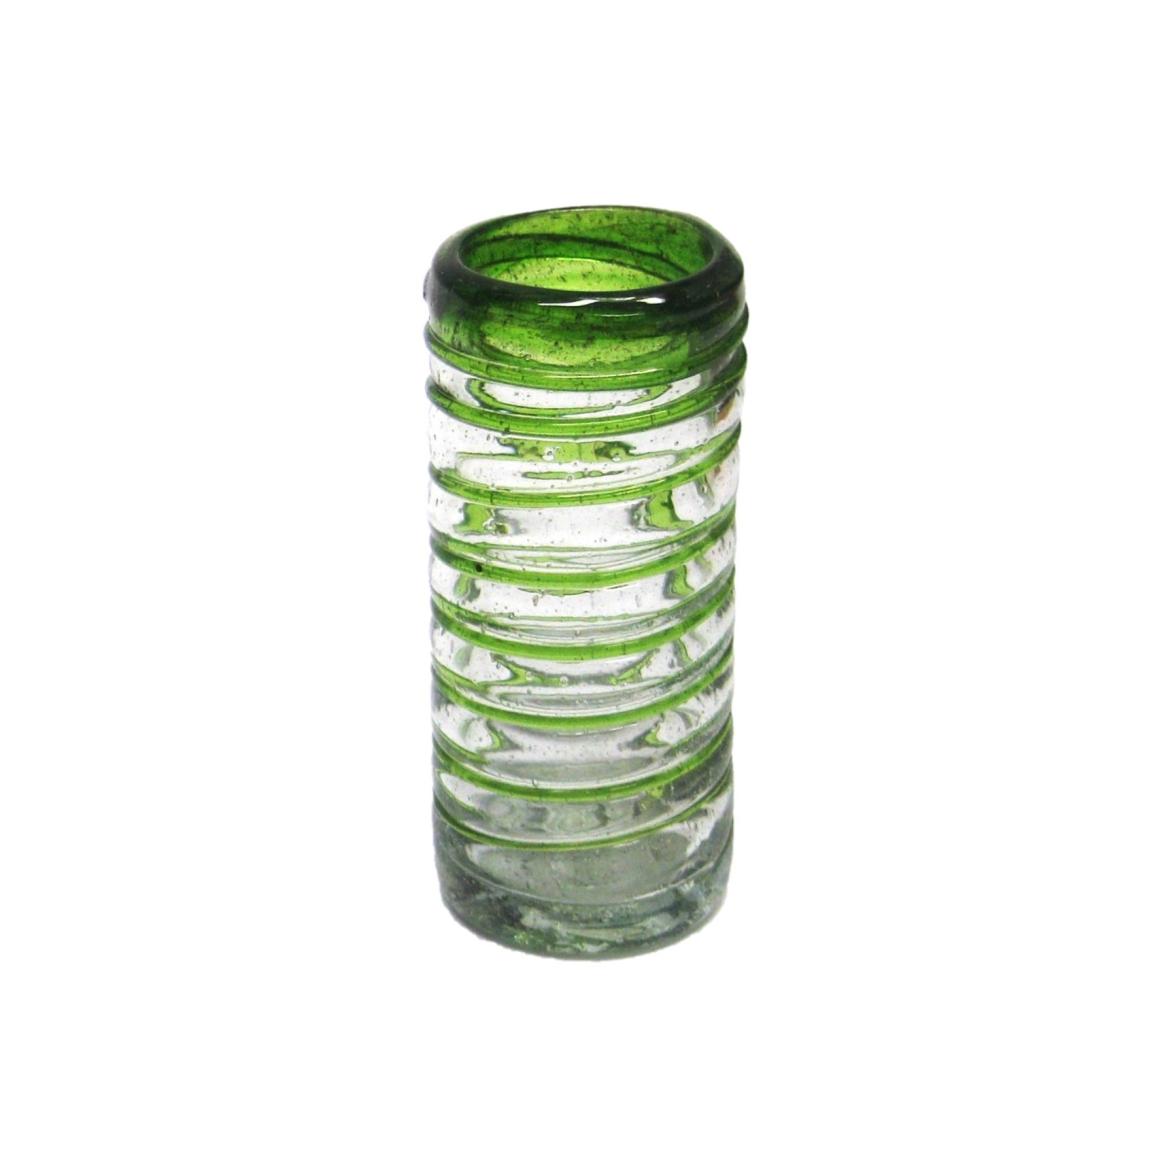 VIDRIO SOPLADO al Mayoreo / 'caballitos' con espiral verde esmeralda / Lazos verde esmeralda giran para cubrir éstos preciosos 'caballitos', perfectos para fiestas o disfrutar de su licor favorito.